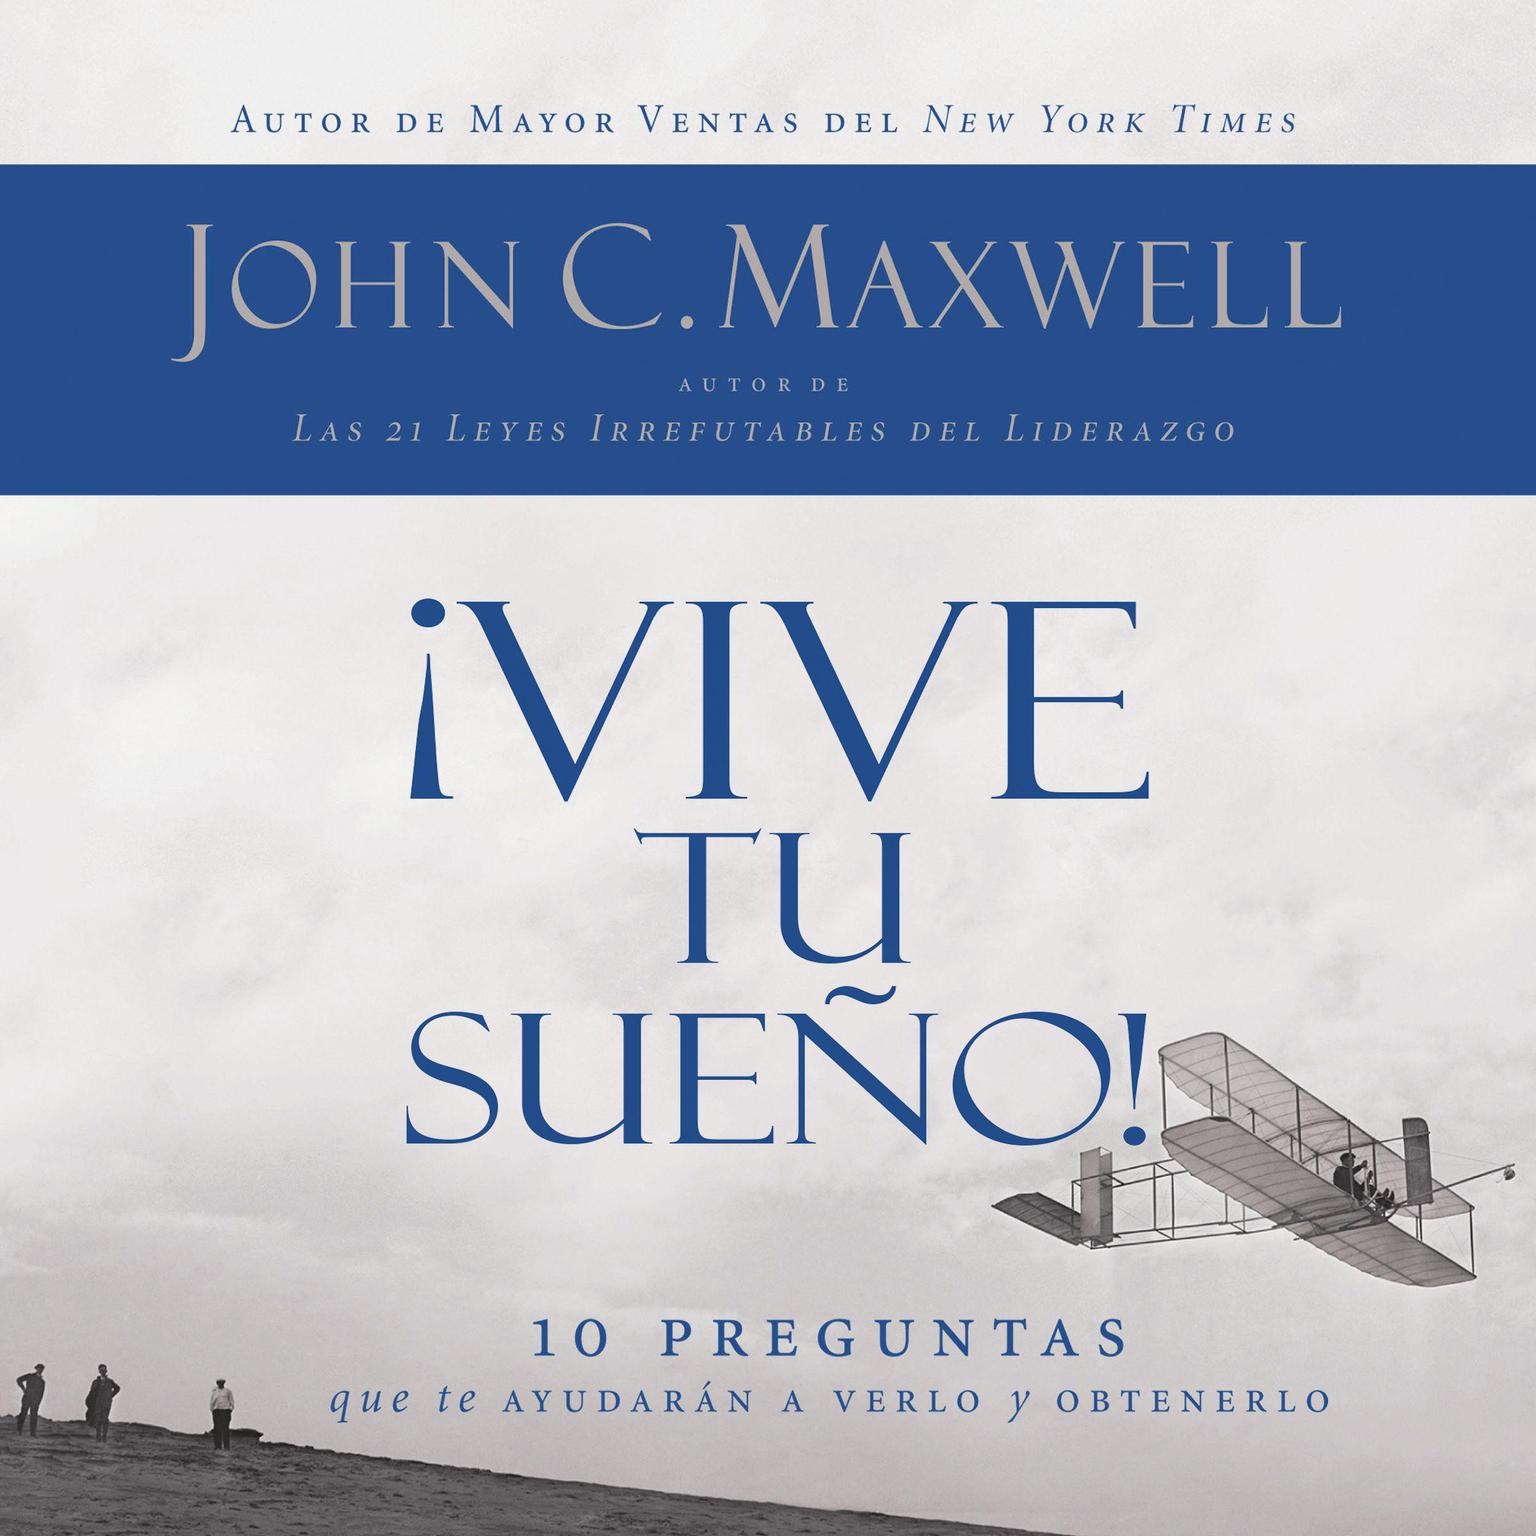 ¡Vive tu sueño! (Abridged): 10 preguntas que te ayudarán a verlo y obtenerlo Audiobook, by John C. Maxwell